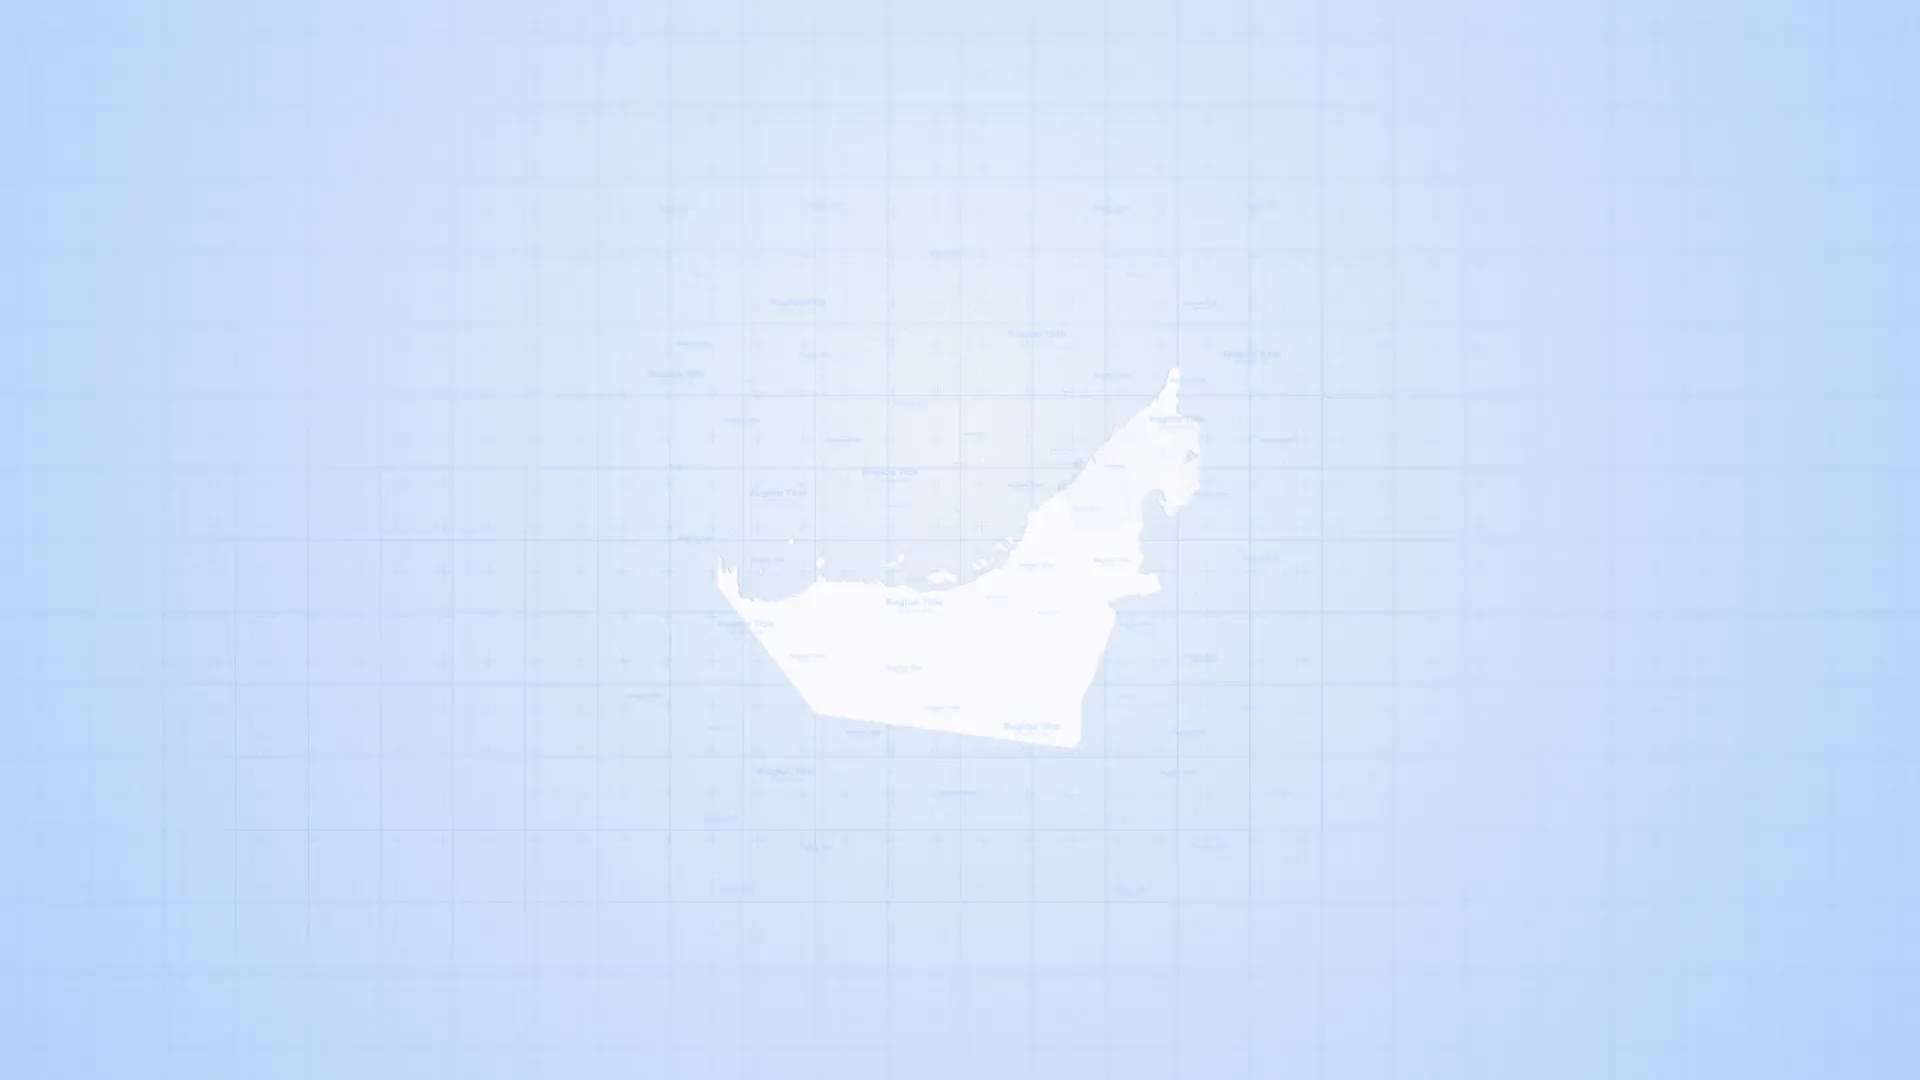 AE模板 | 阿拉伯联合酋长国地图旅游国际新闻路线标记工具包动态动画展示